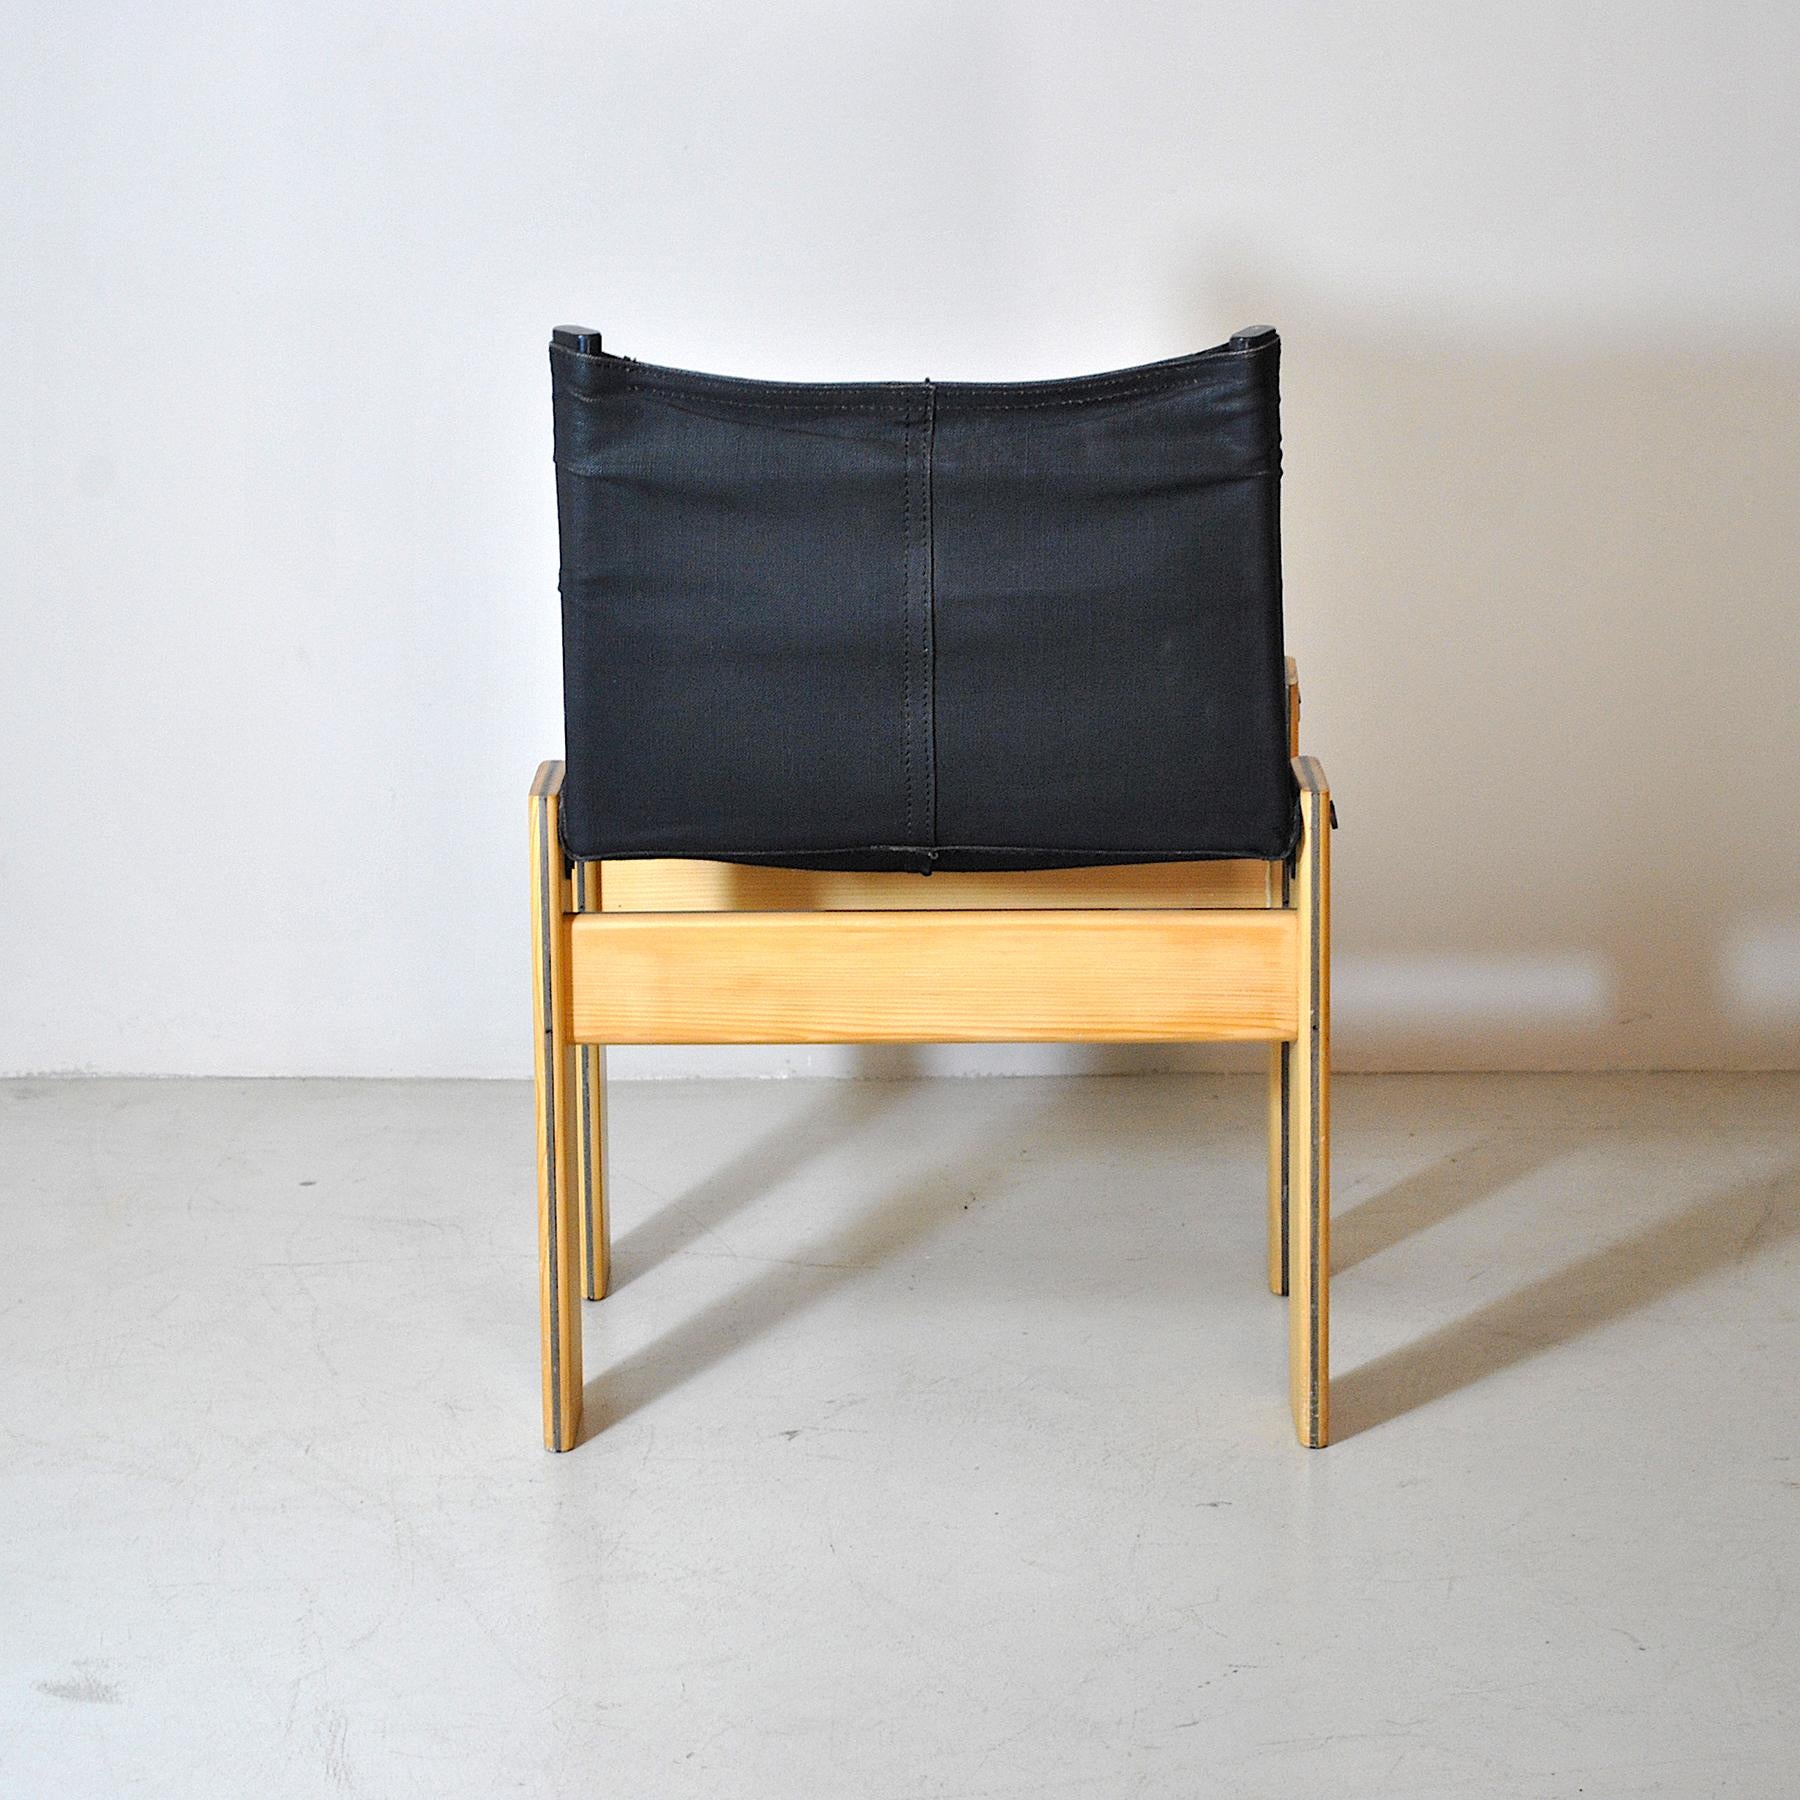 Textile Afra & Tobia Scarpa Italian Midcentury Chair 70's